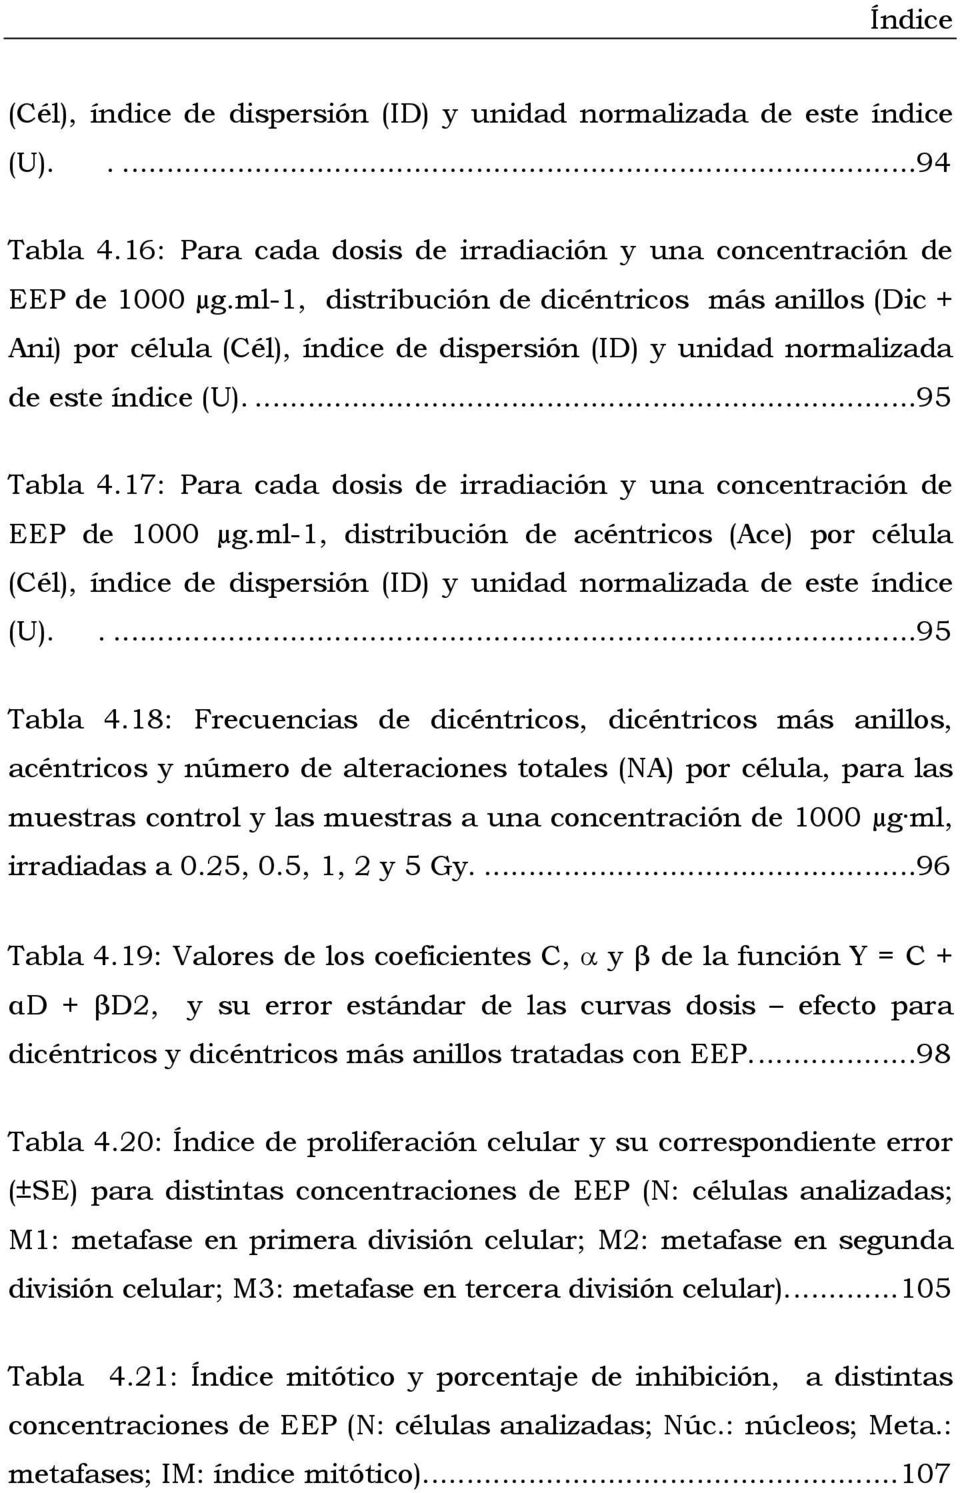 17: Para cada dosis de irradiación y una concentración de EEP de 1000 µg.ml-1, distribución de acéntricos (Ace) por célula (Cél), índice de dispersión (ID) y unidad normalizada de este índice (U). ab.